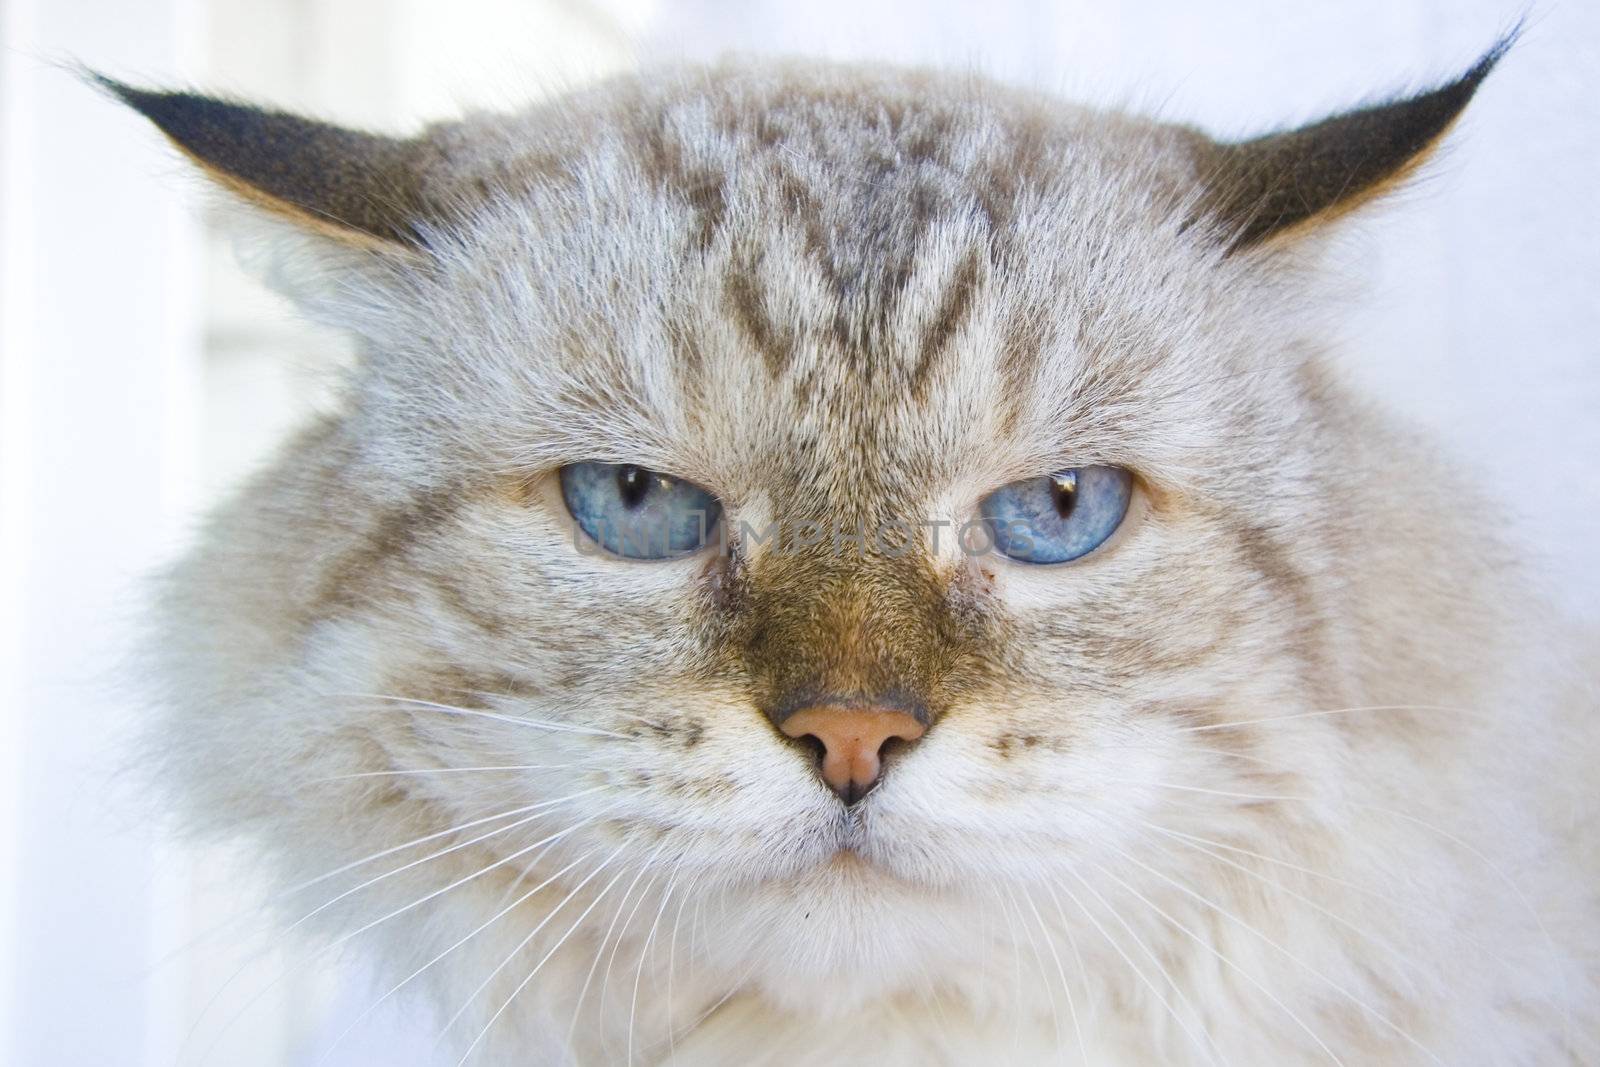 Angry cat with blue eyes by Kudryashka